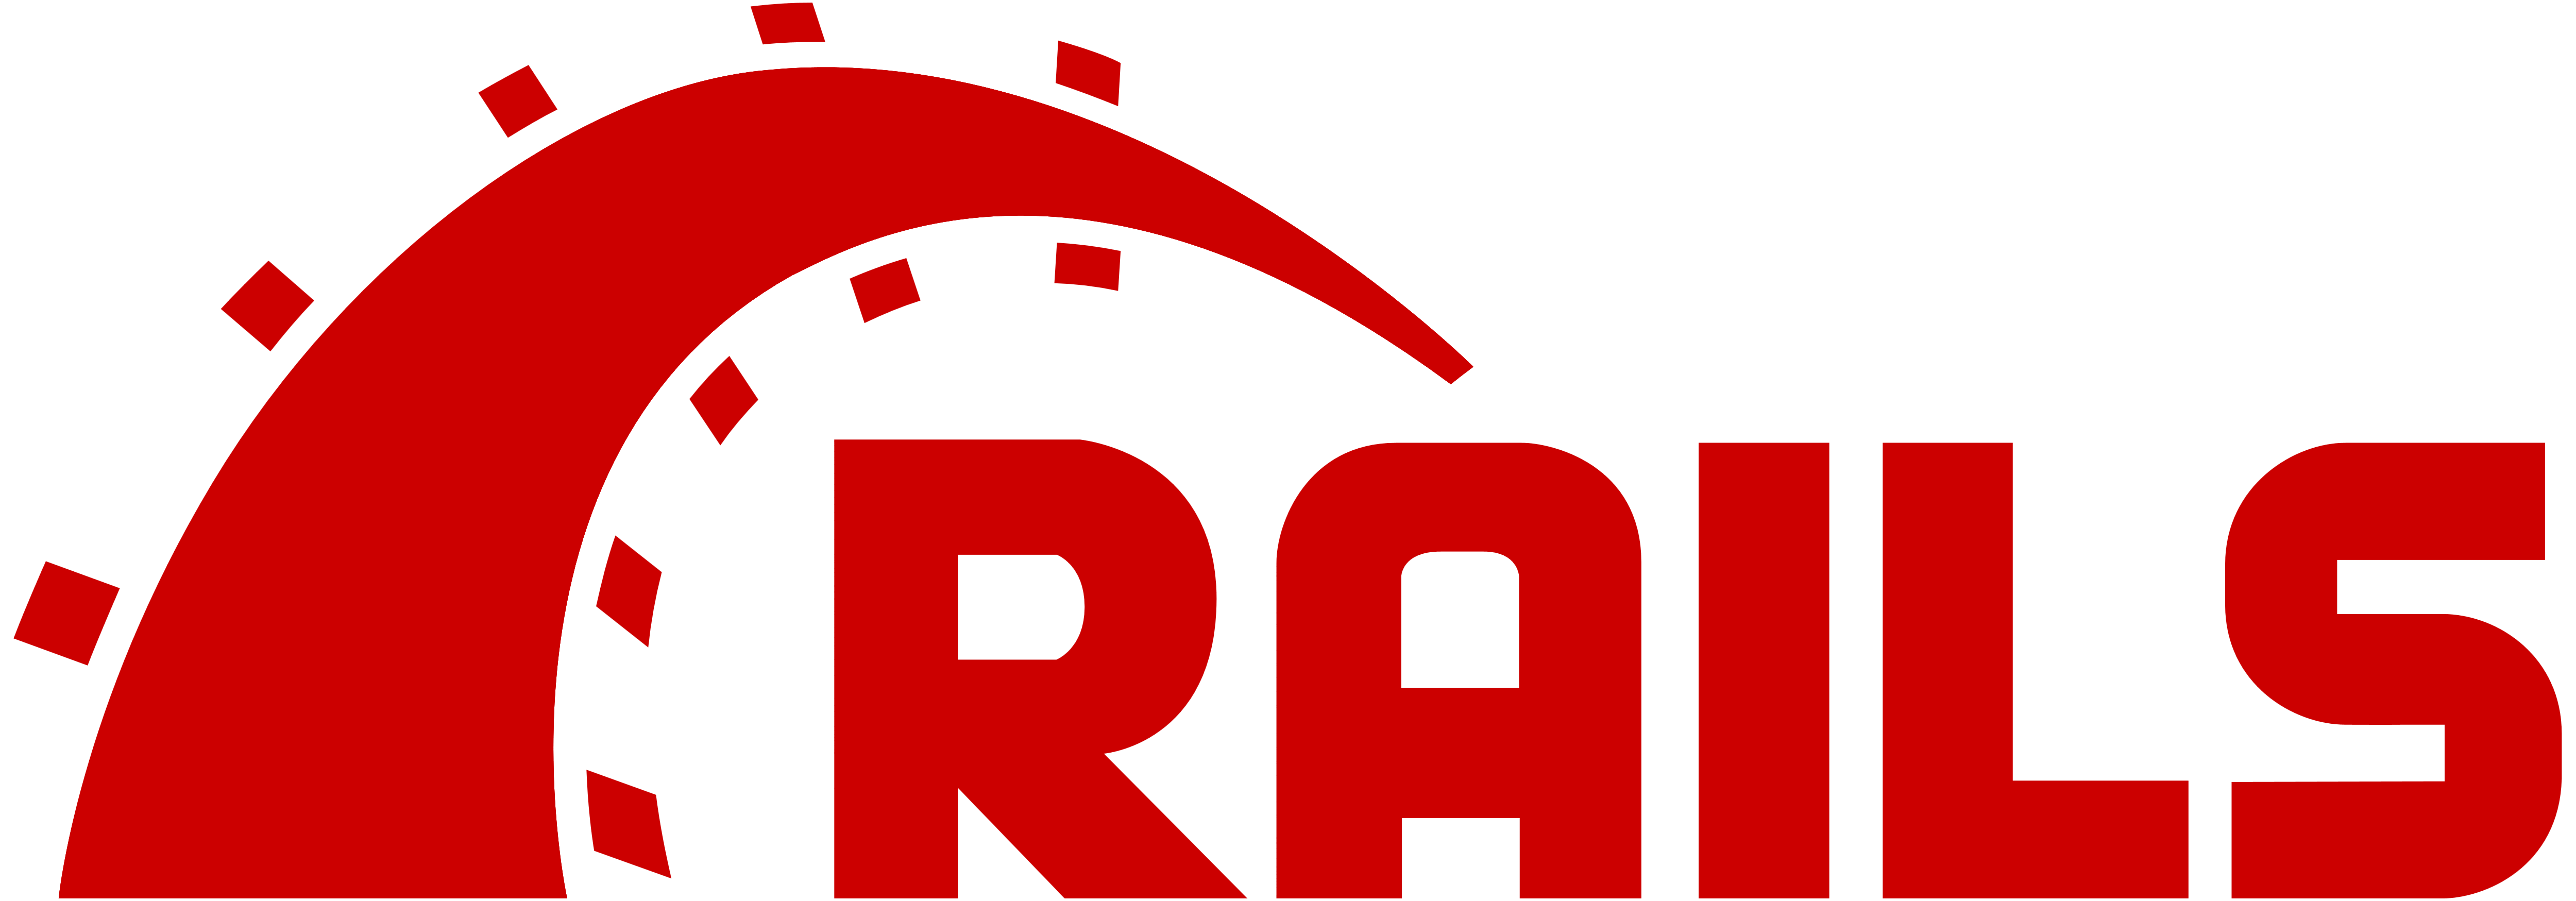 Contratar desarrollador de Ruby on Rails